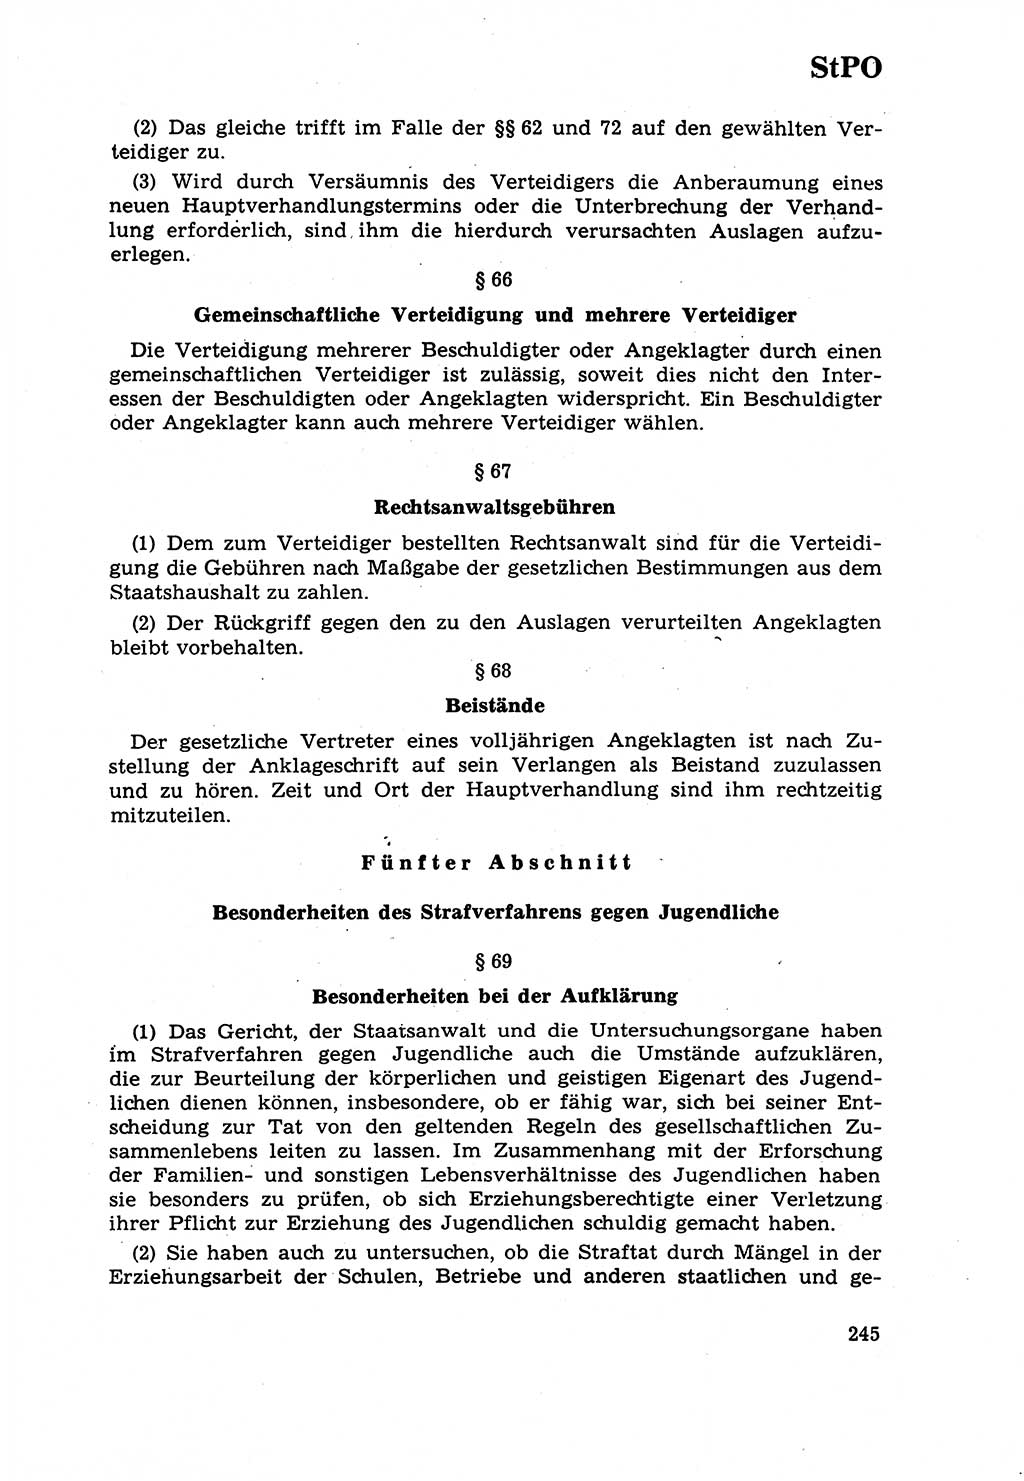 Strafrecht [Deutsche Demokratische Republik (DDR)] 1968, Seite 245 (Strafr. DDR 1968, S. 245)